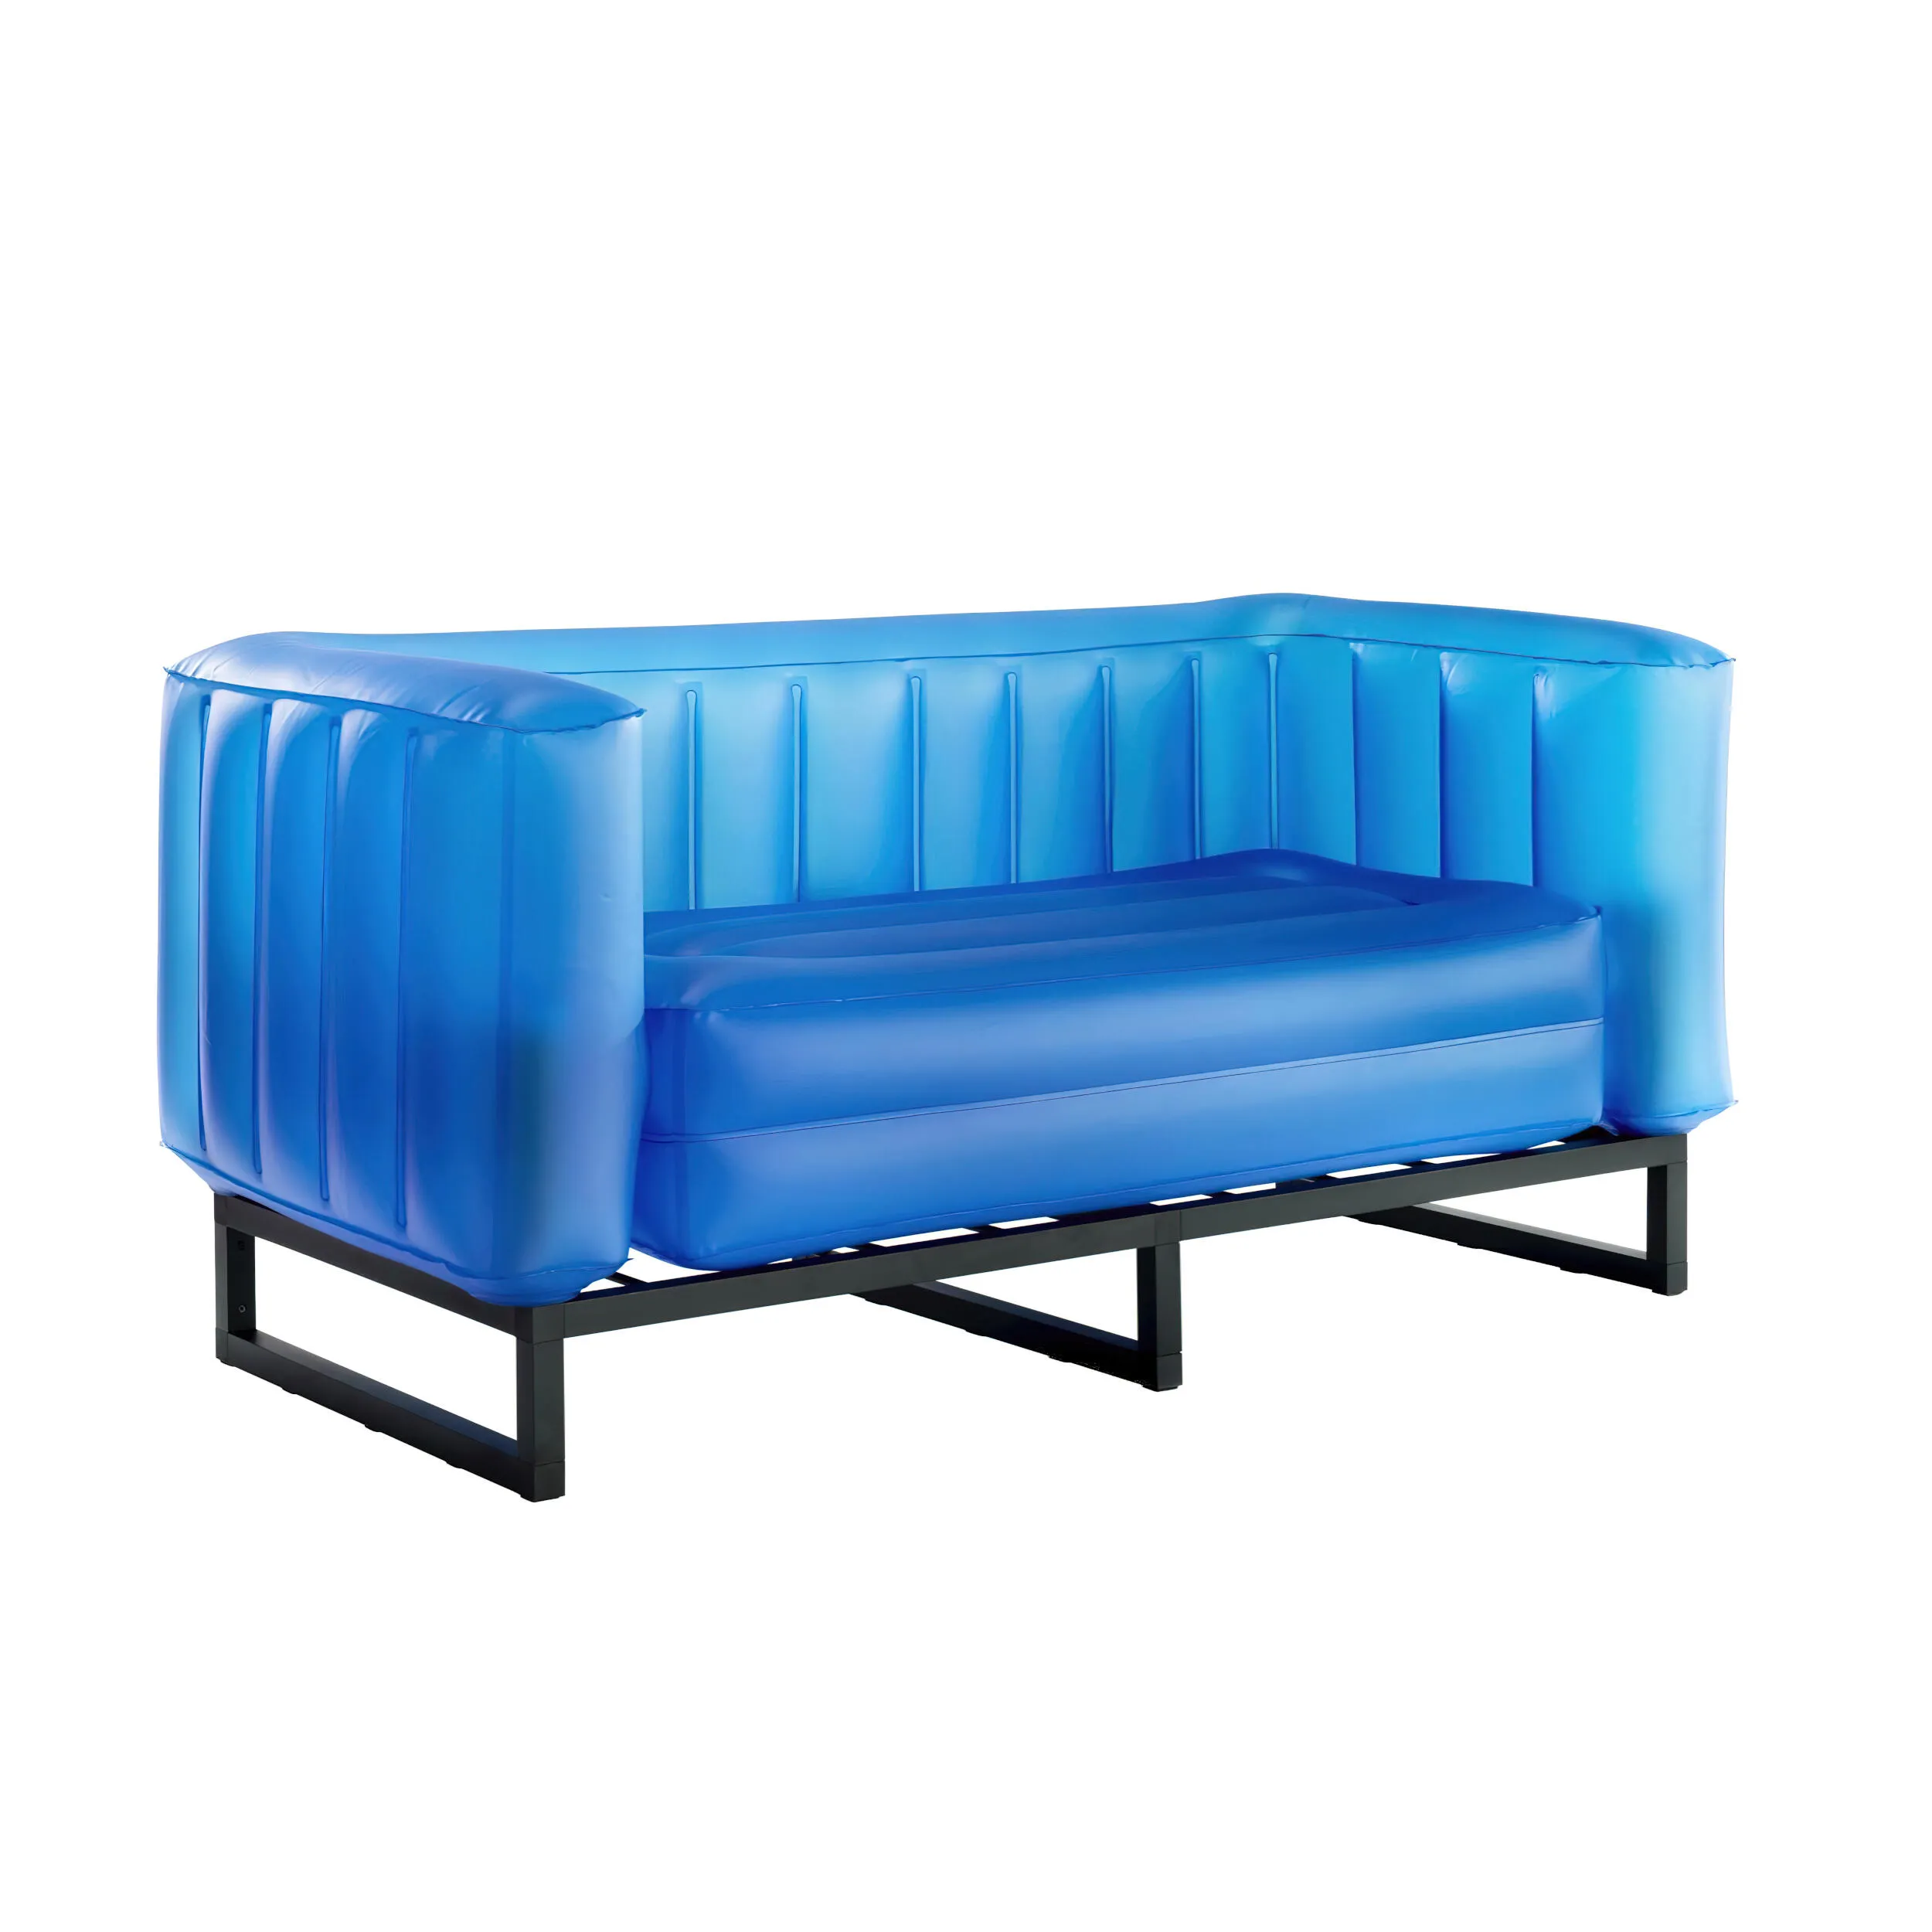 divano Yomi eko illuminato struttura in alluminio, dimensioni 76x151xH69 cm peso 14,6 kg, seduta gonfiabile in TPU colore blu traslucido